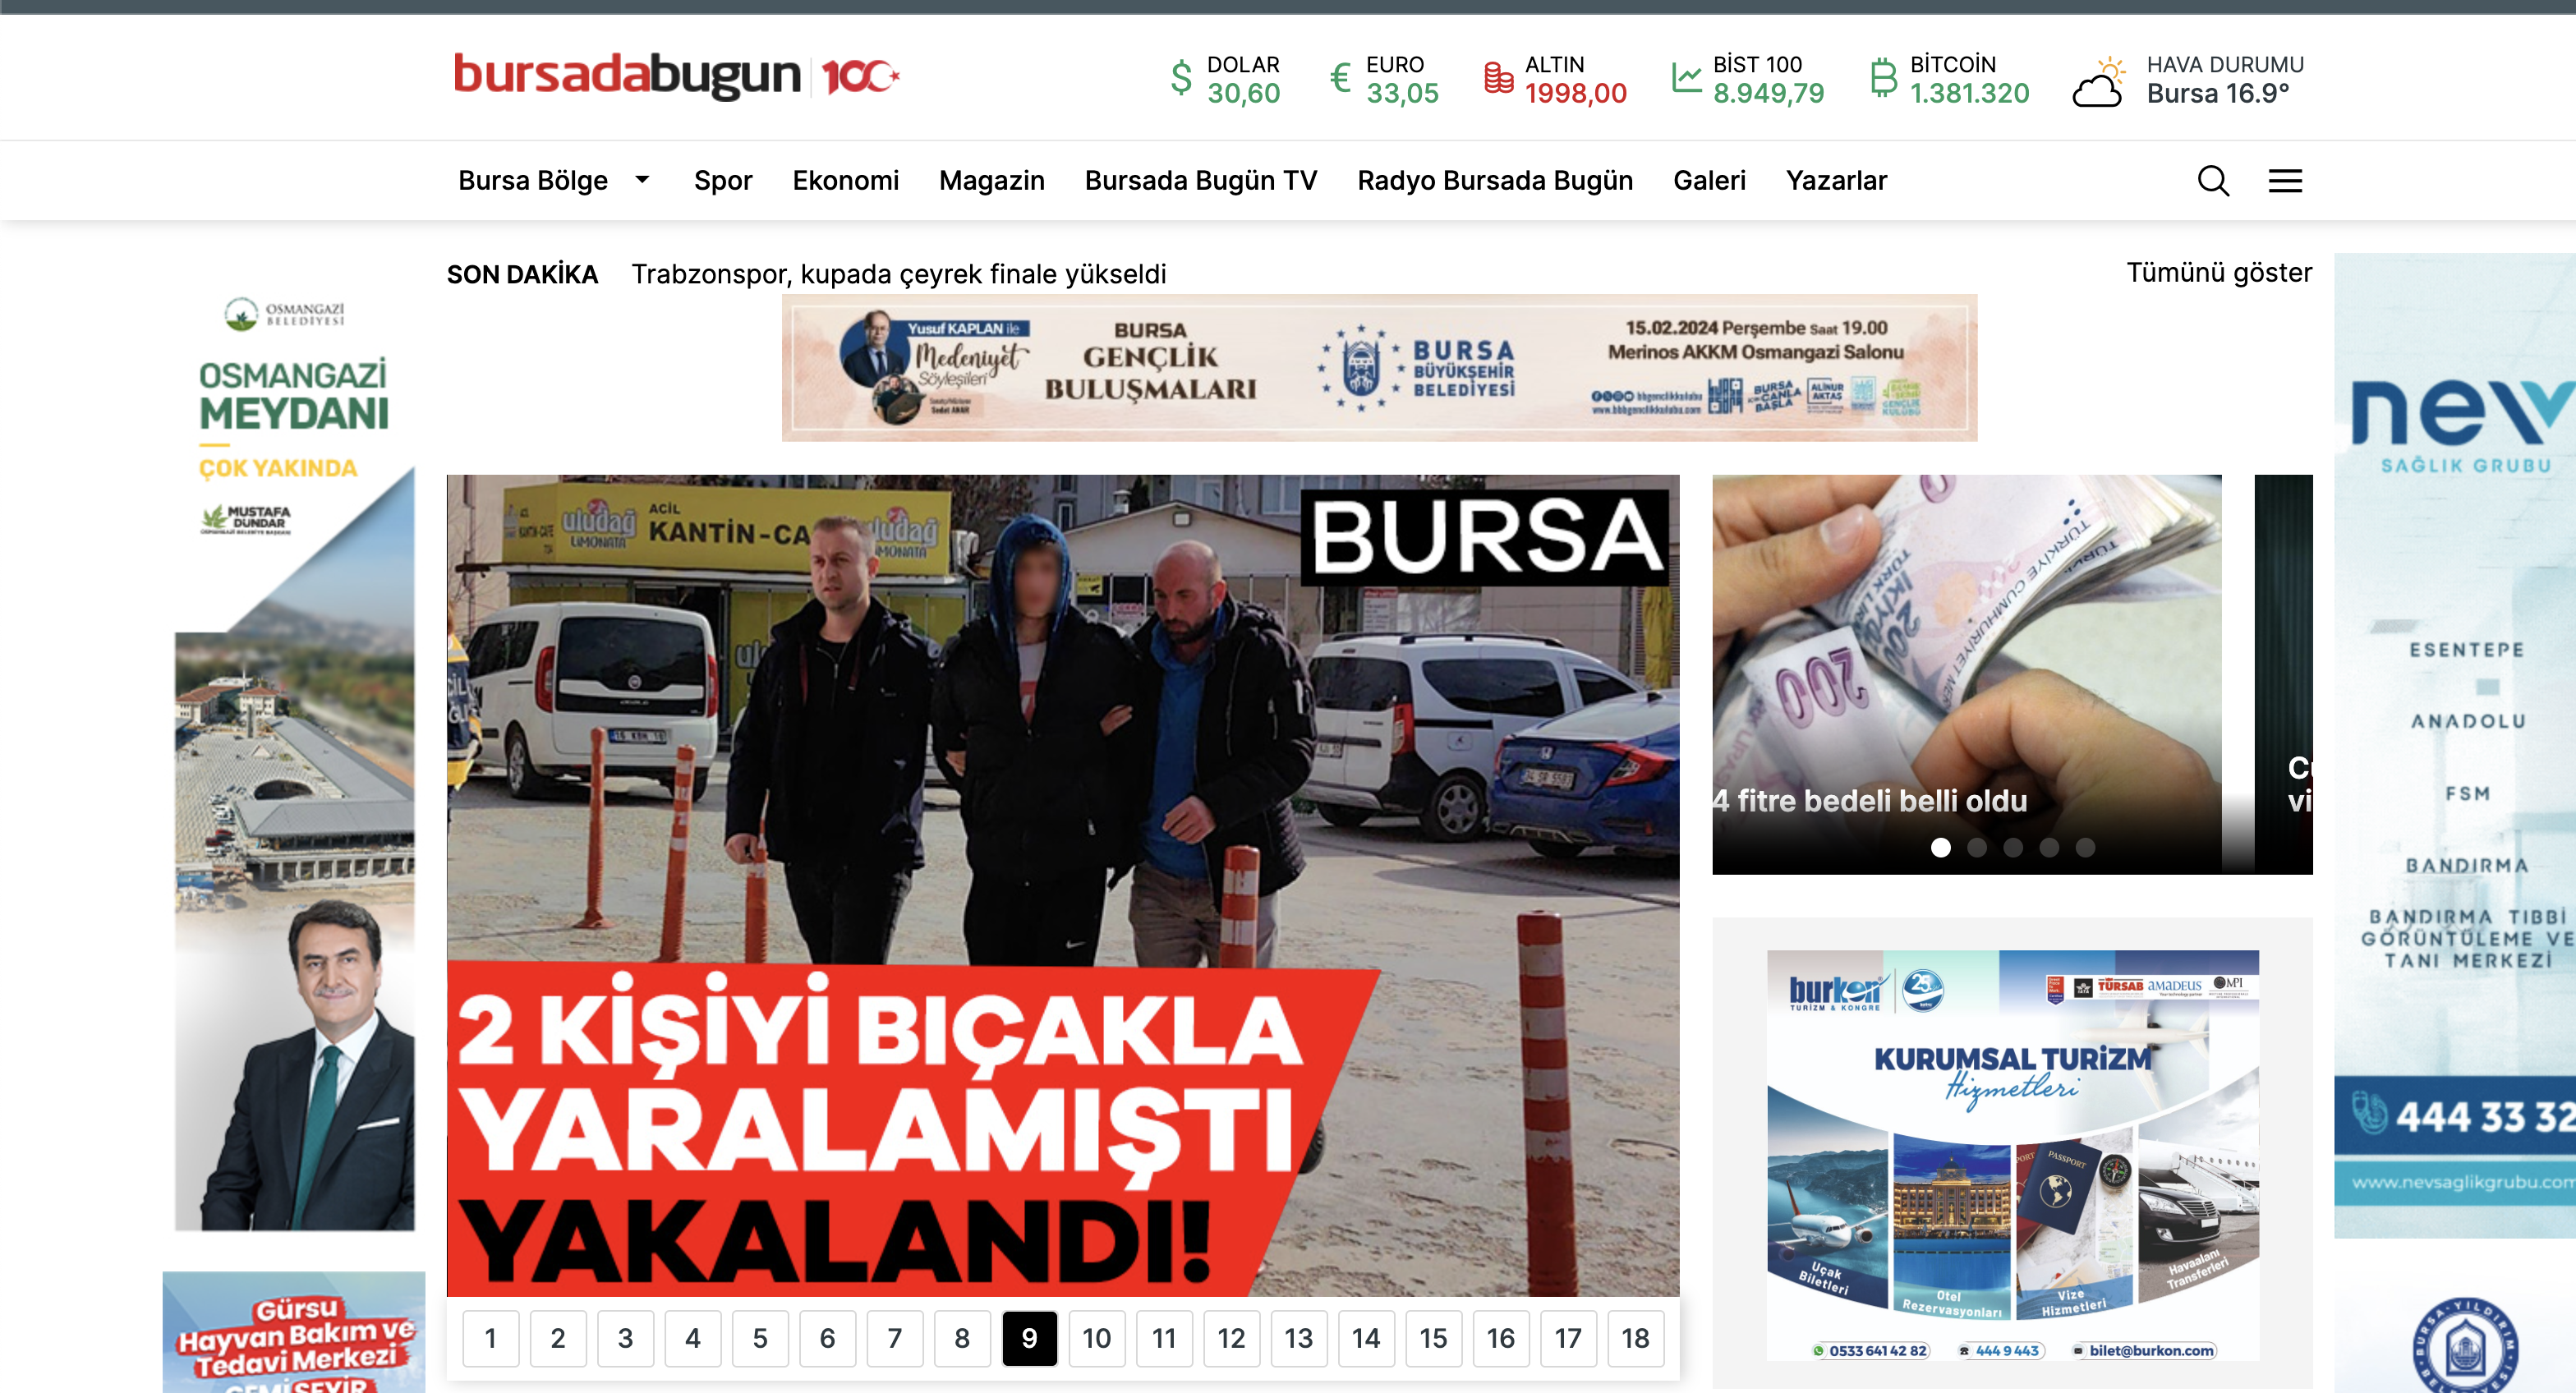 Bursa'dan Haberiniz Olsun: BursadaBugun.com